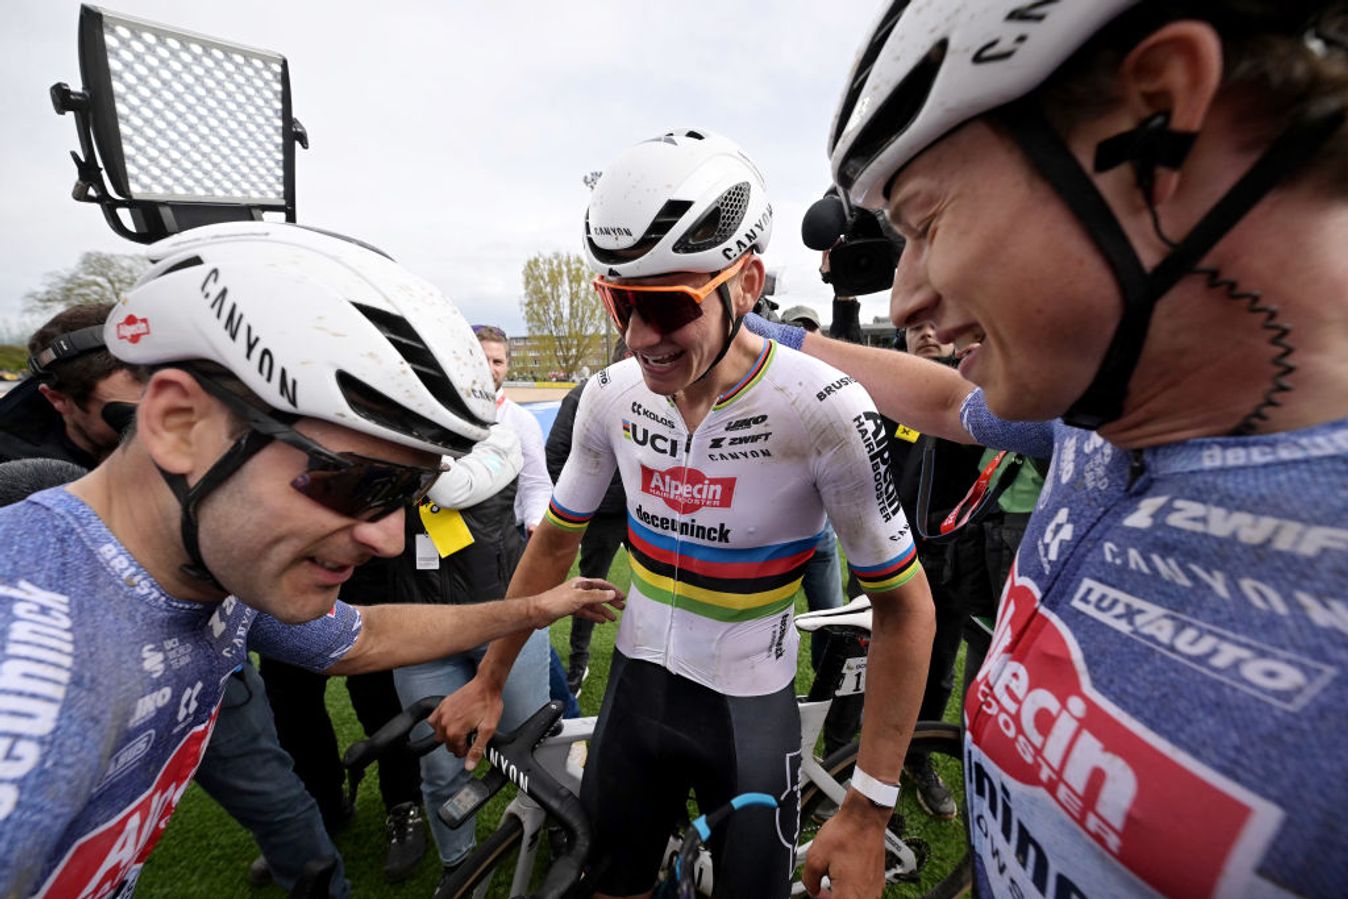 Vermeersch, Van der Poel and Philipsen (L-R) celebrate in the Roubaix velodrome